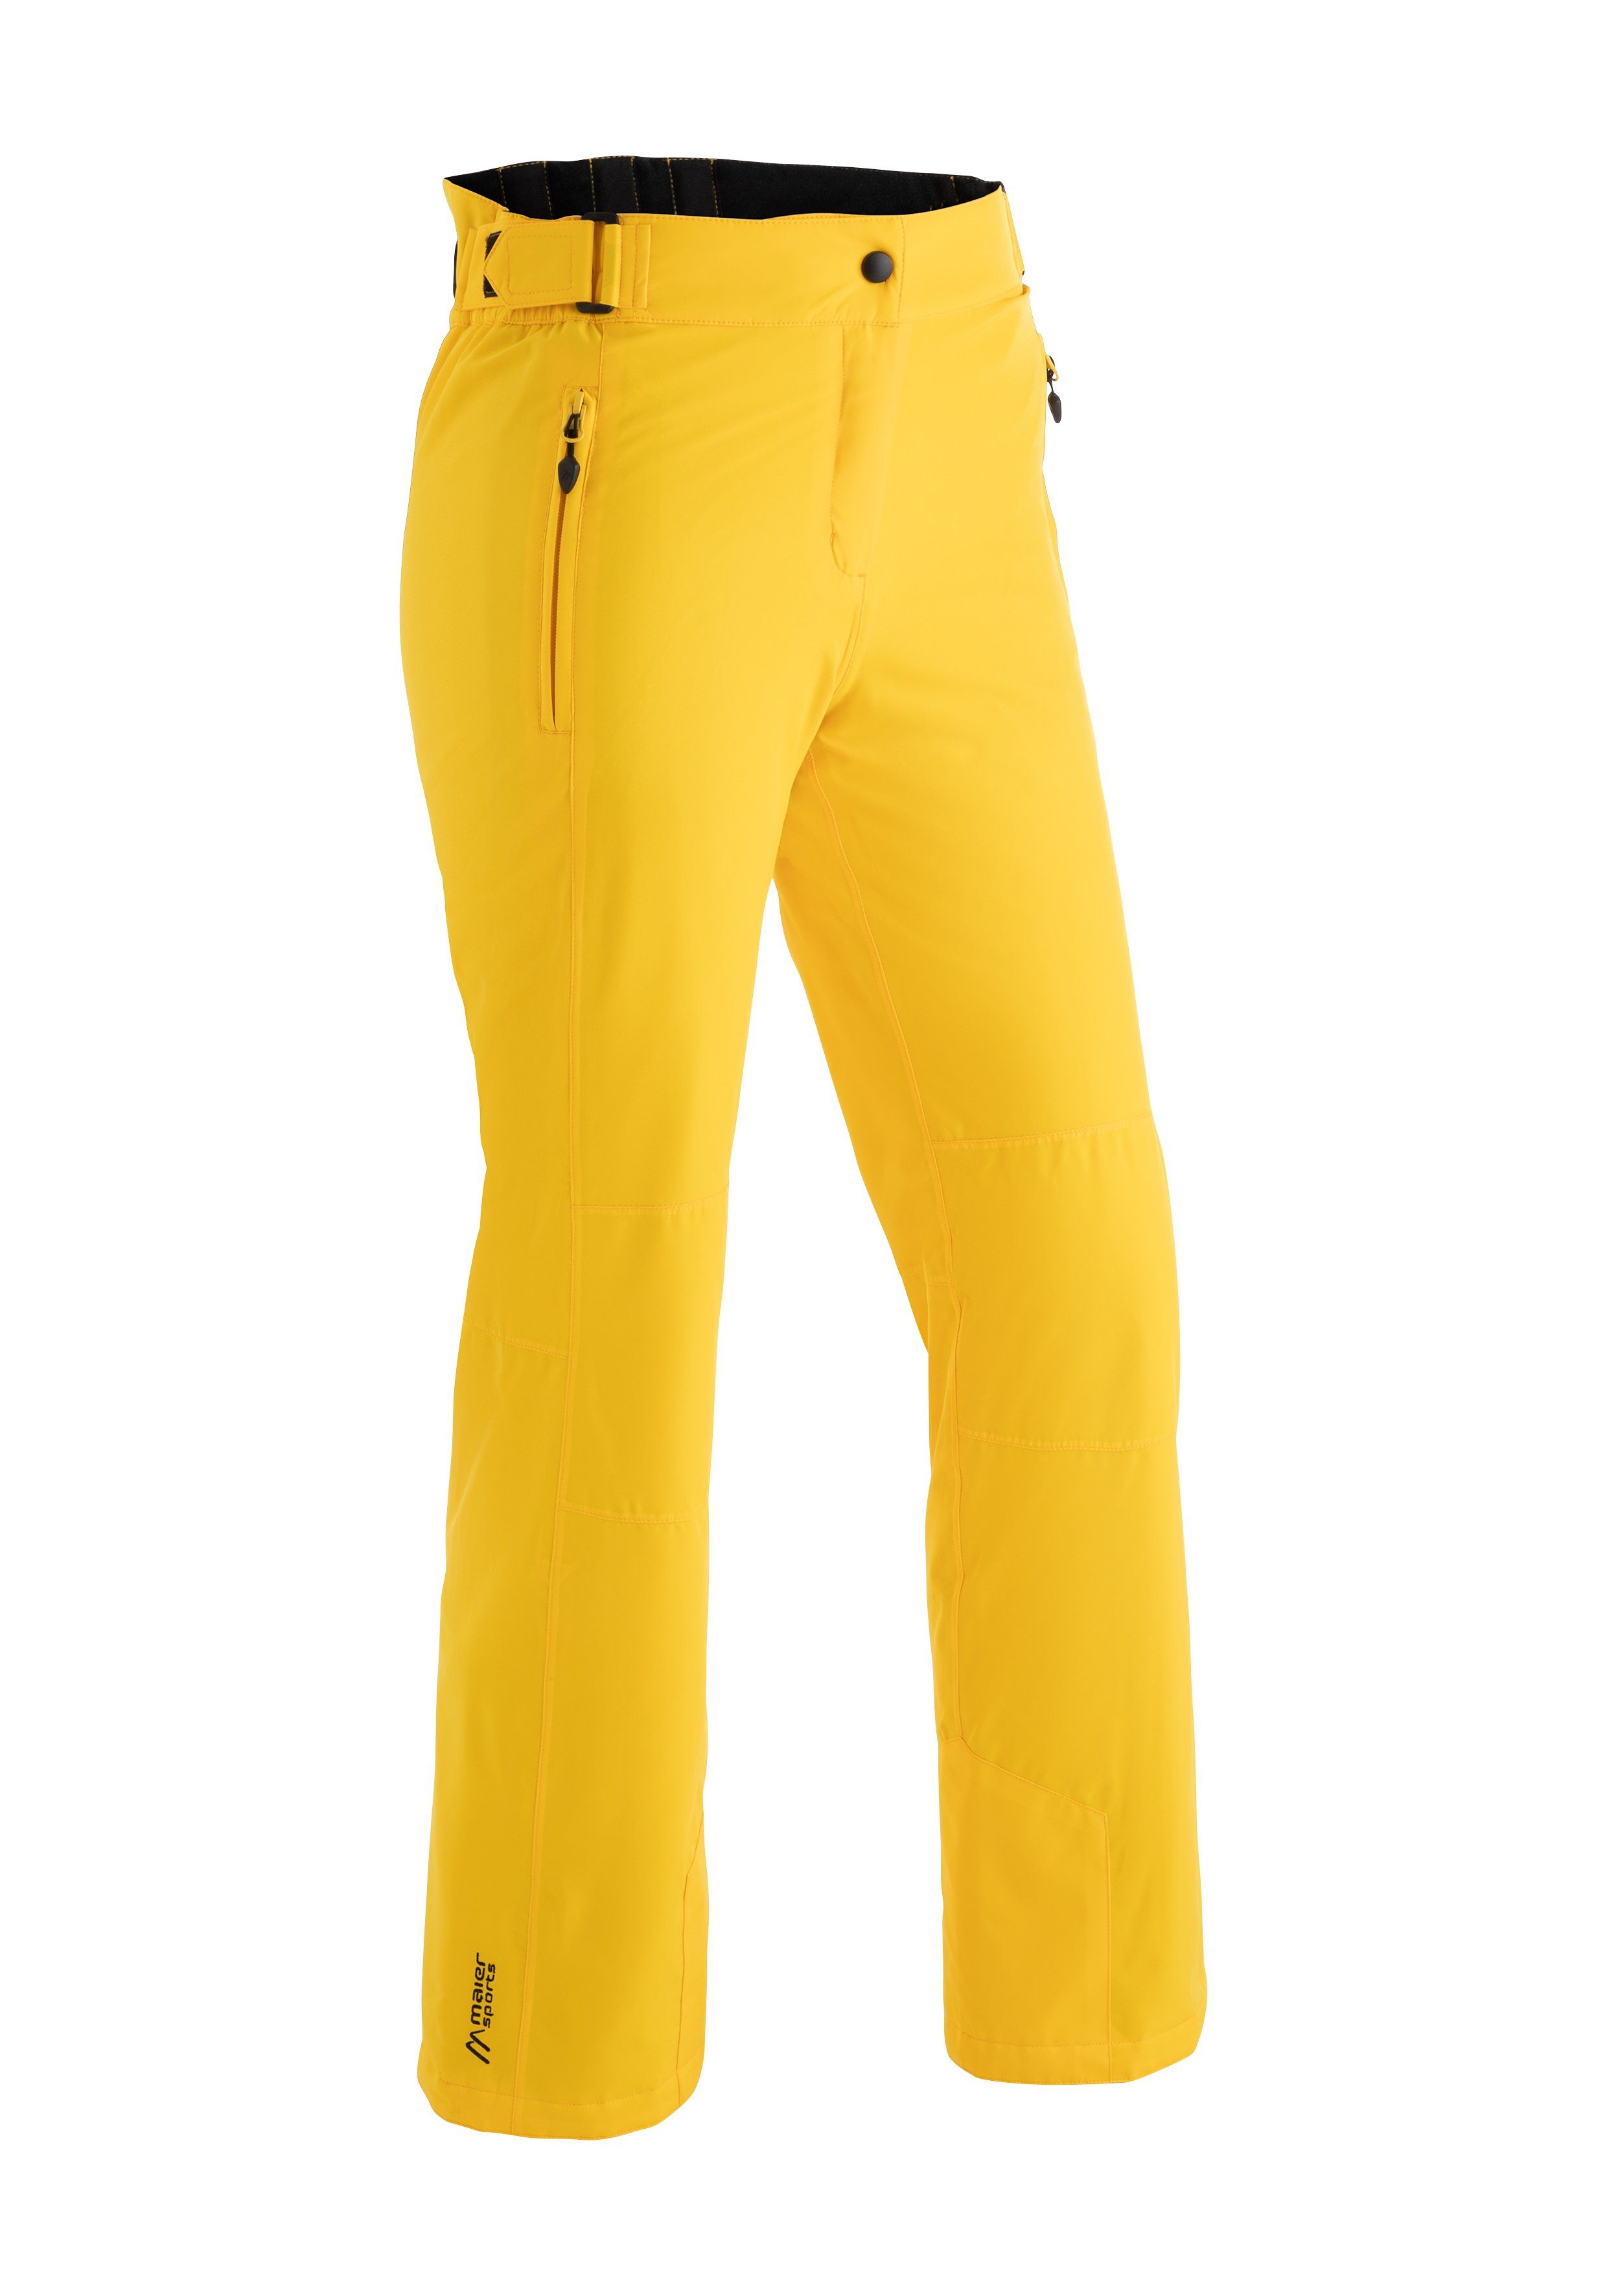 Super beliebter Versandhandel für neue Produkte Maier Sports Skihose Vroni atmungsaktiv, slim elastisch fit, wasserdicht, Slim gelb